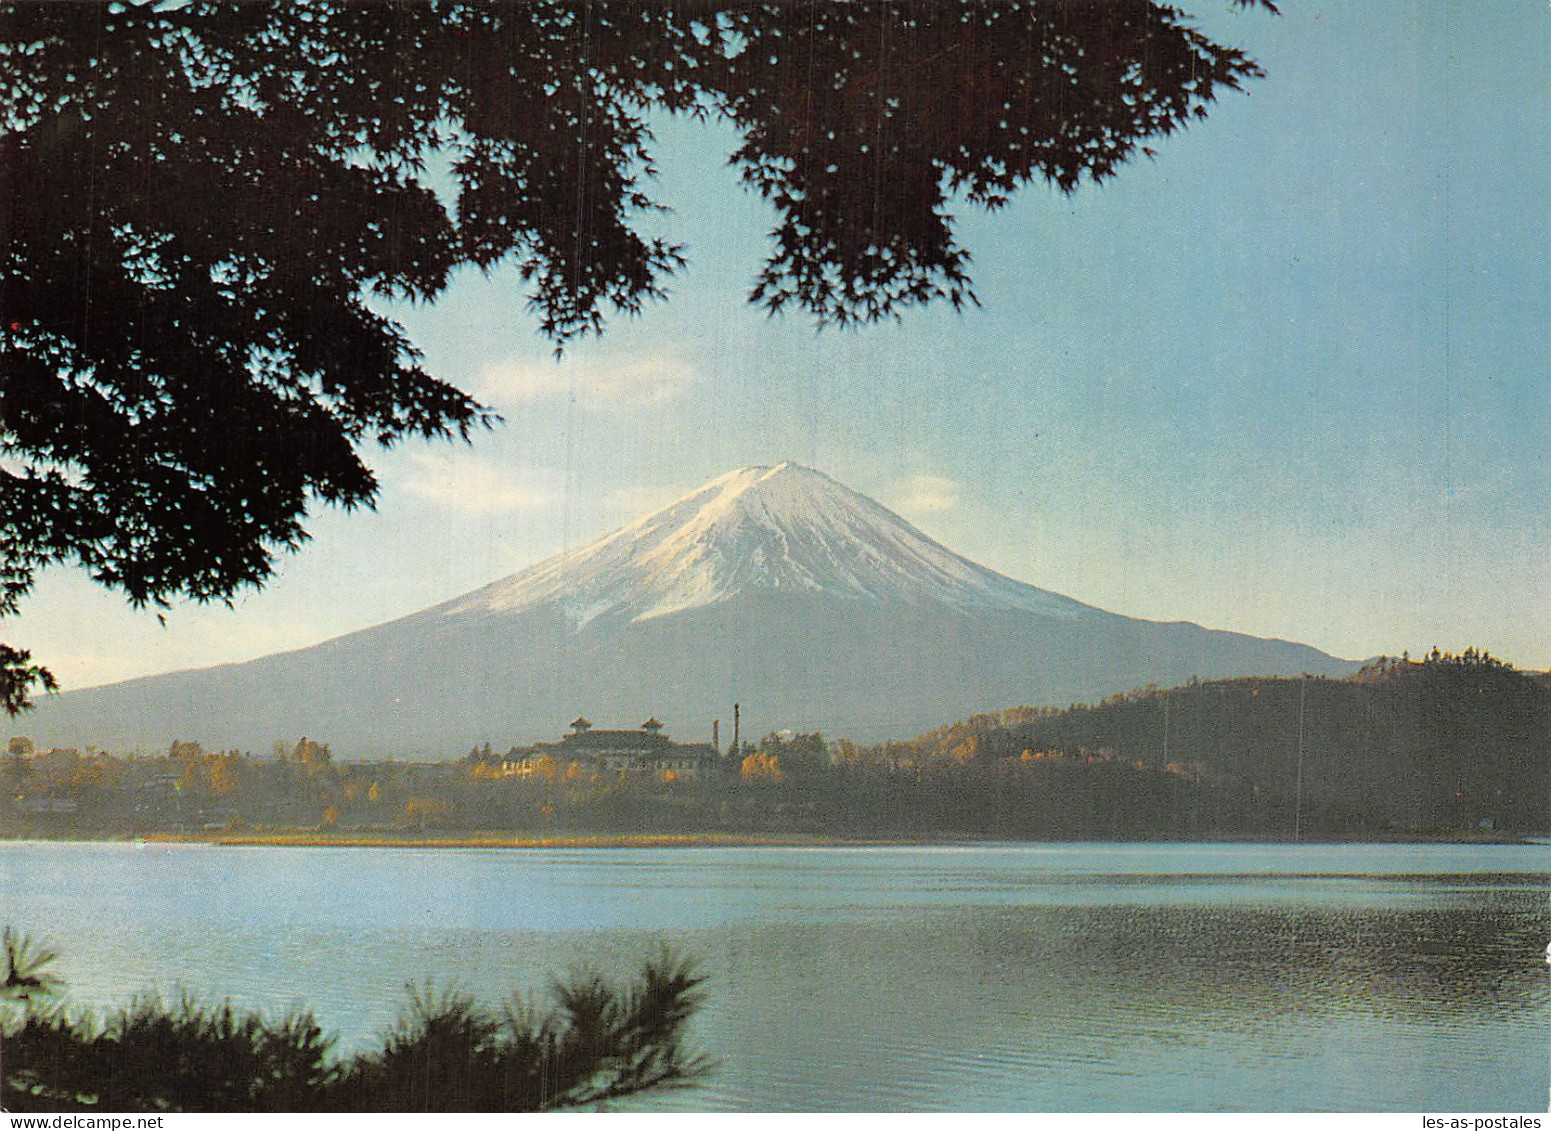 JAPAN MOUNT FUJI FROM LAKE KAWAGUCHI - Kyoto